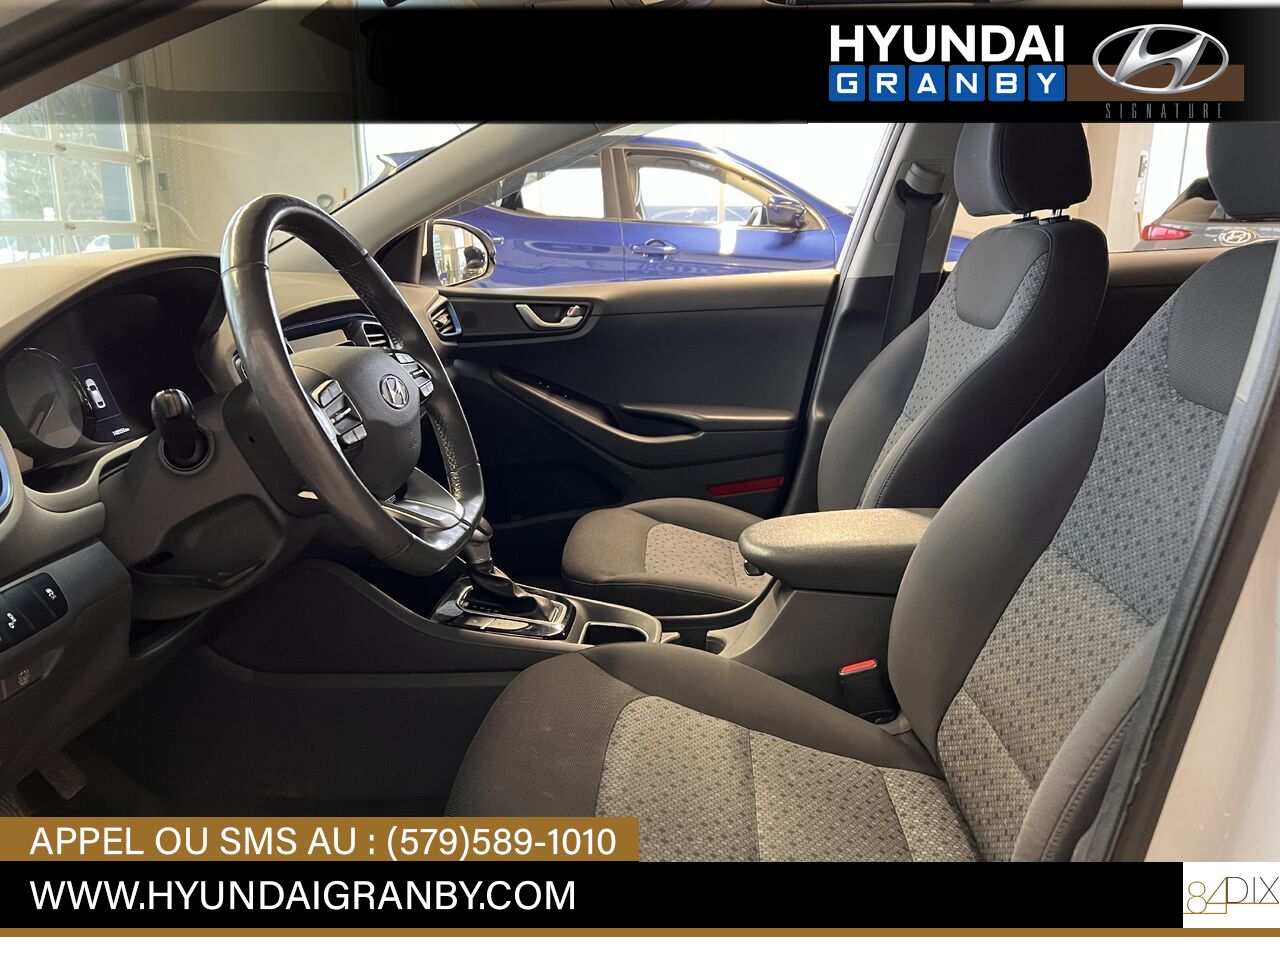 2017 Hyundai Ioniq hybride Granby - photo #7